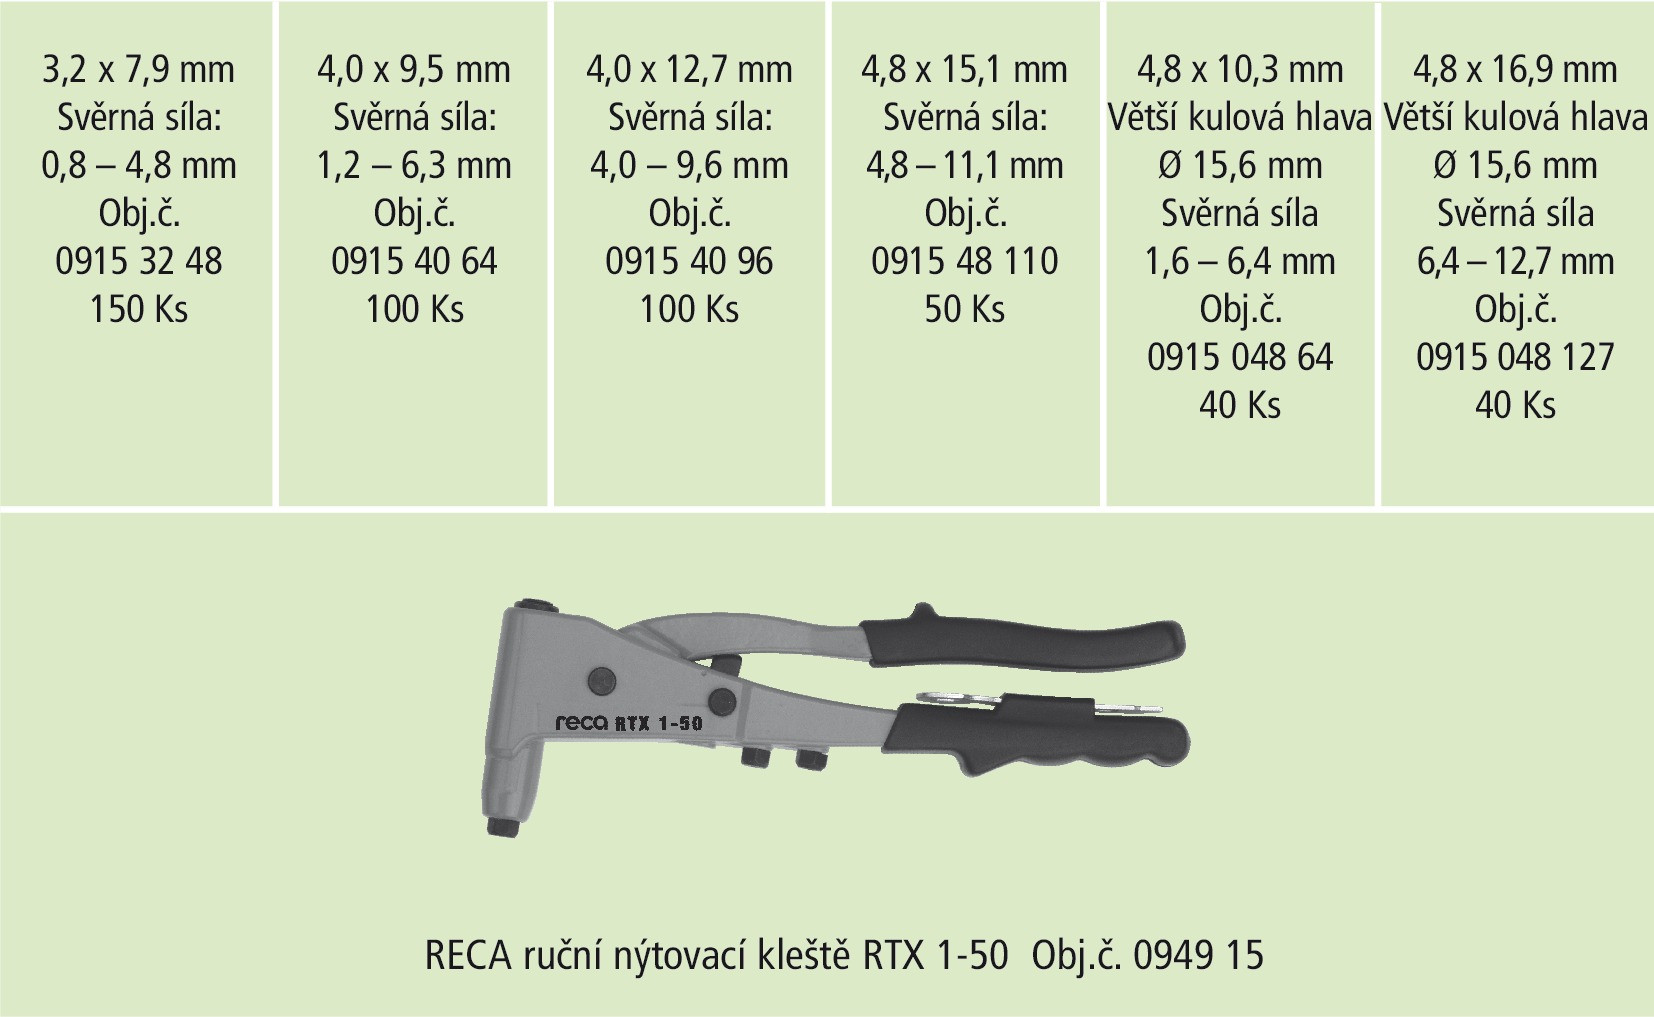 RECA Sortiment - Multinieten Alu/Stahl mit Zange - 480-teilig